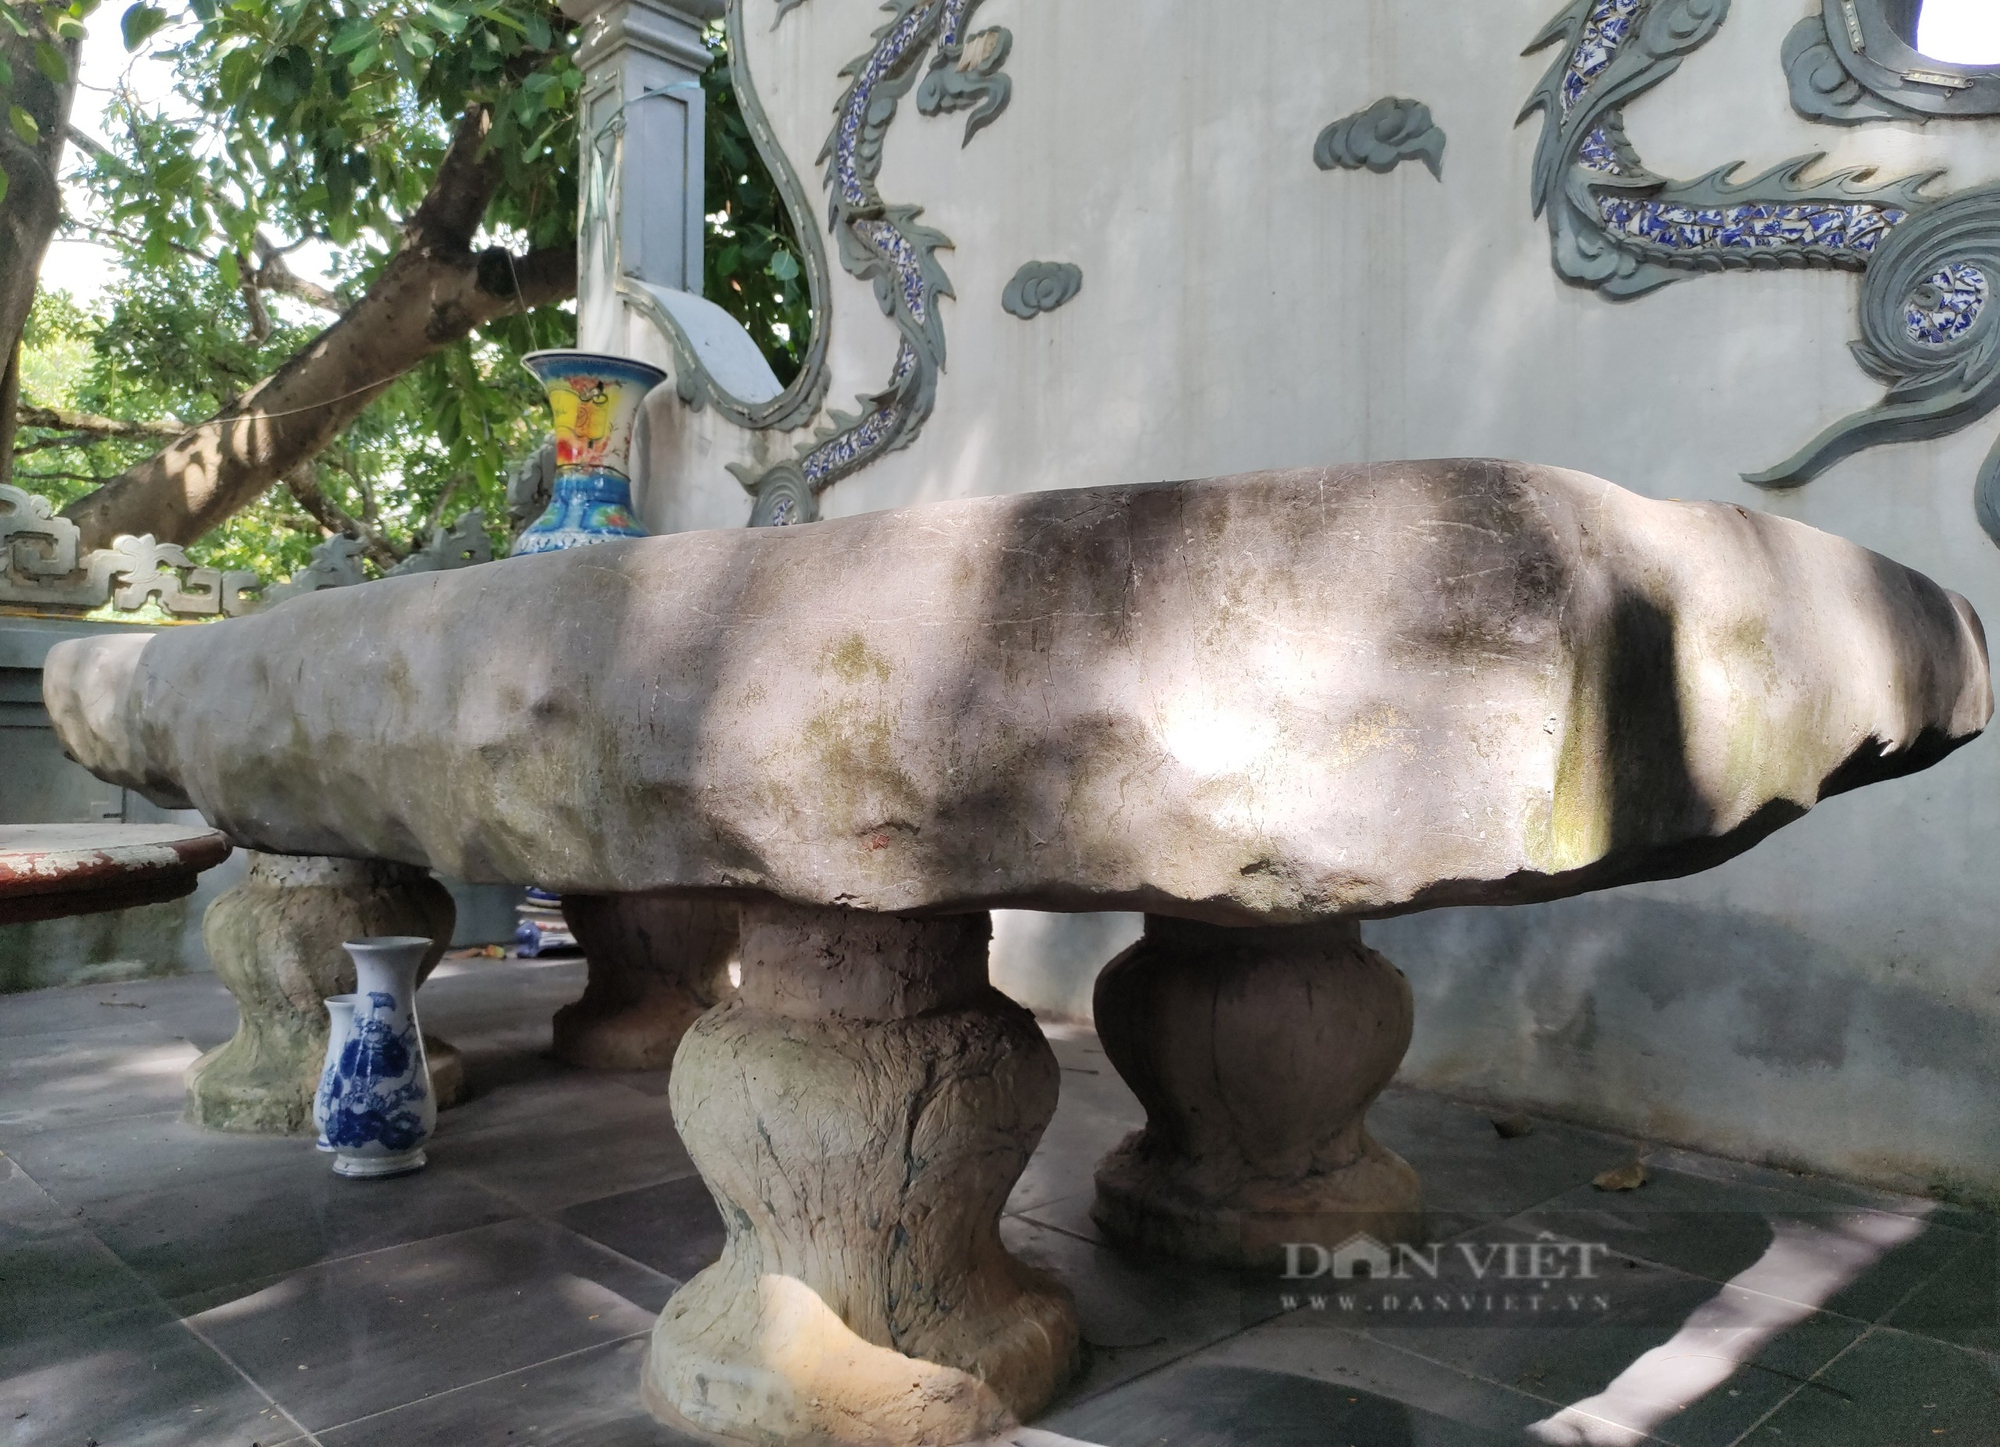 Chuyện lạ ở Hà Nội: Cả làng coi phiến đá như một linh vật, xây miếu lập bàn thờ  - Ảnh 4.